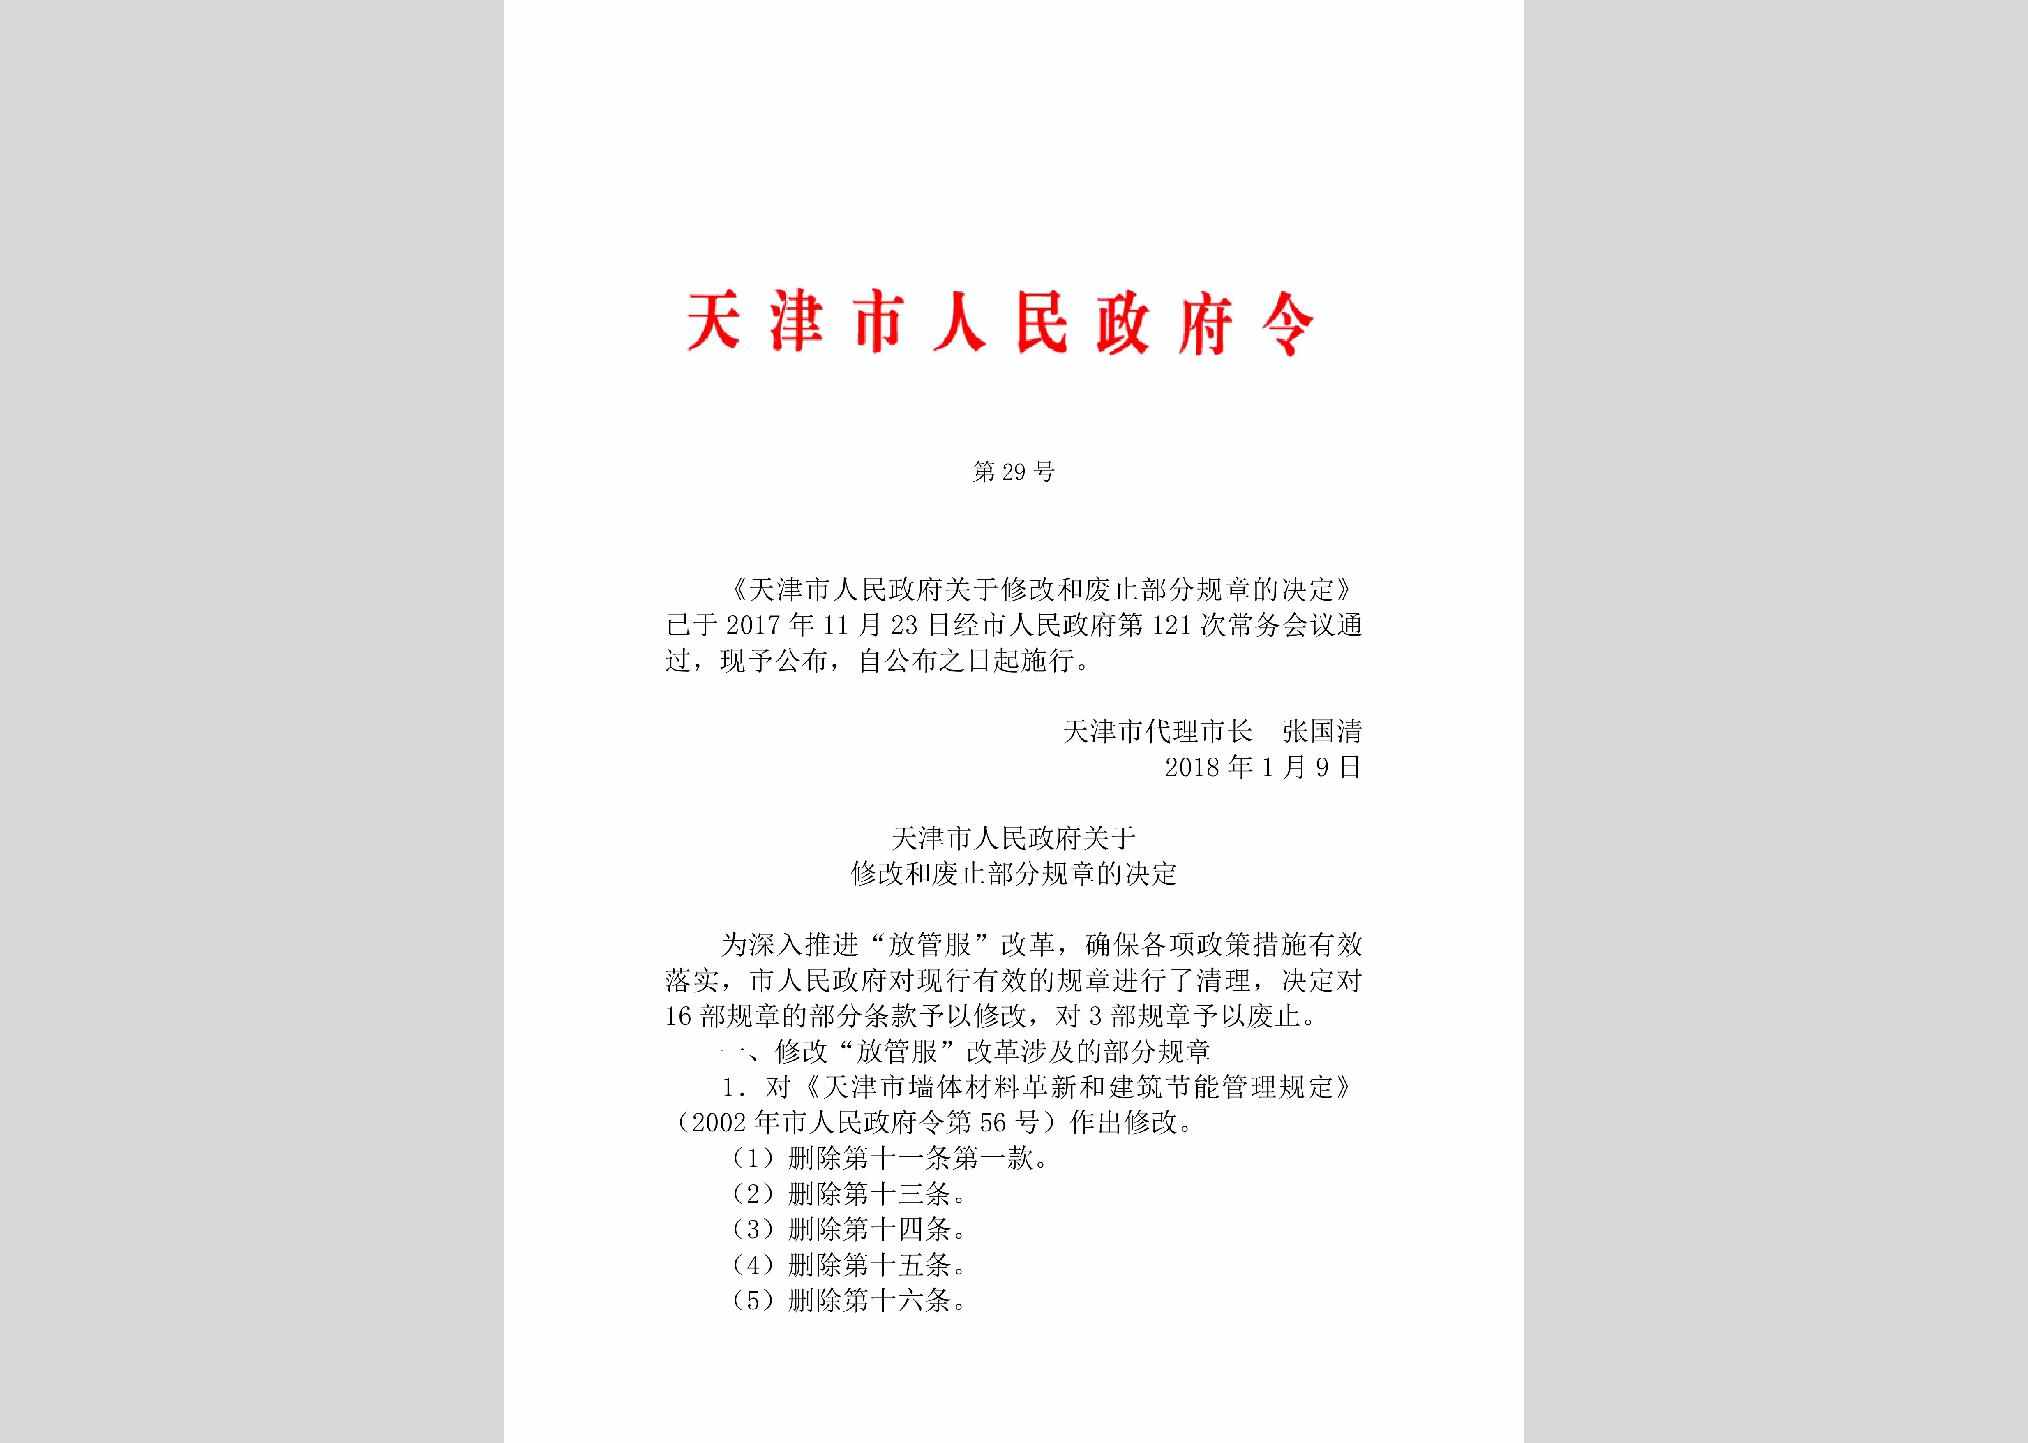 天津市人民政府令第29号：天津市人民政府关于修改和废止部分规章的决定